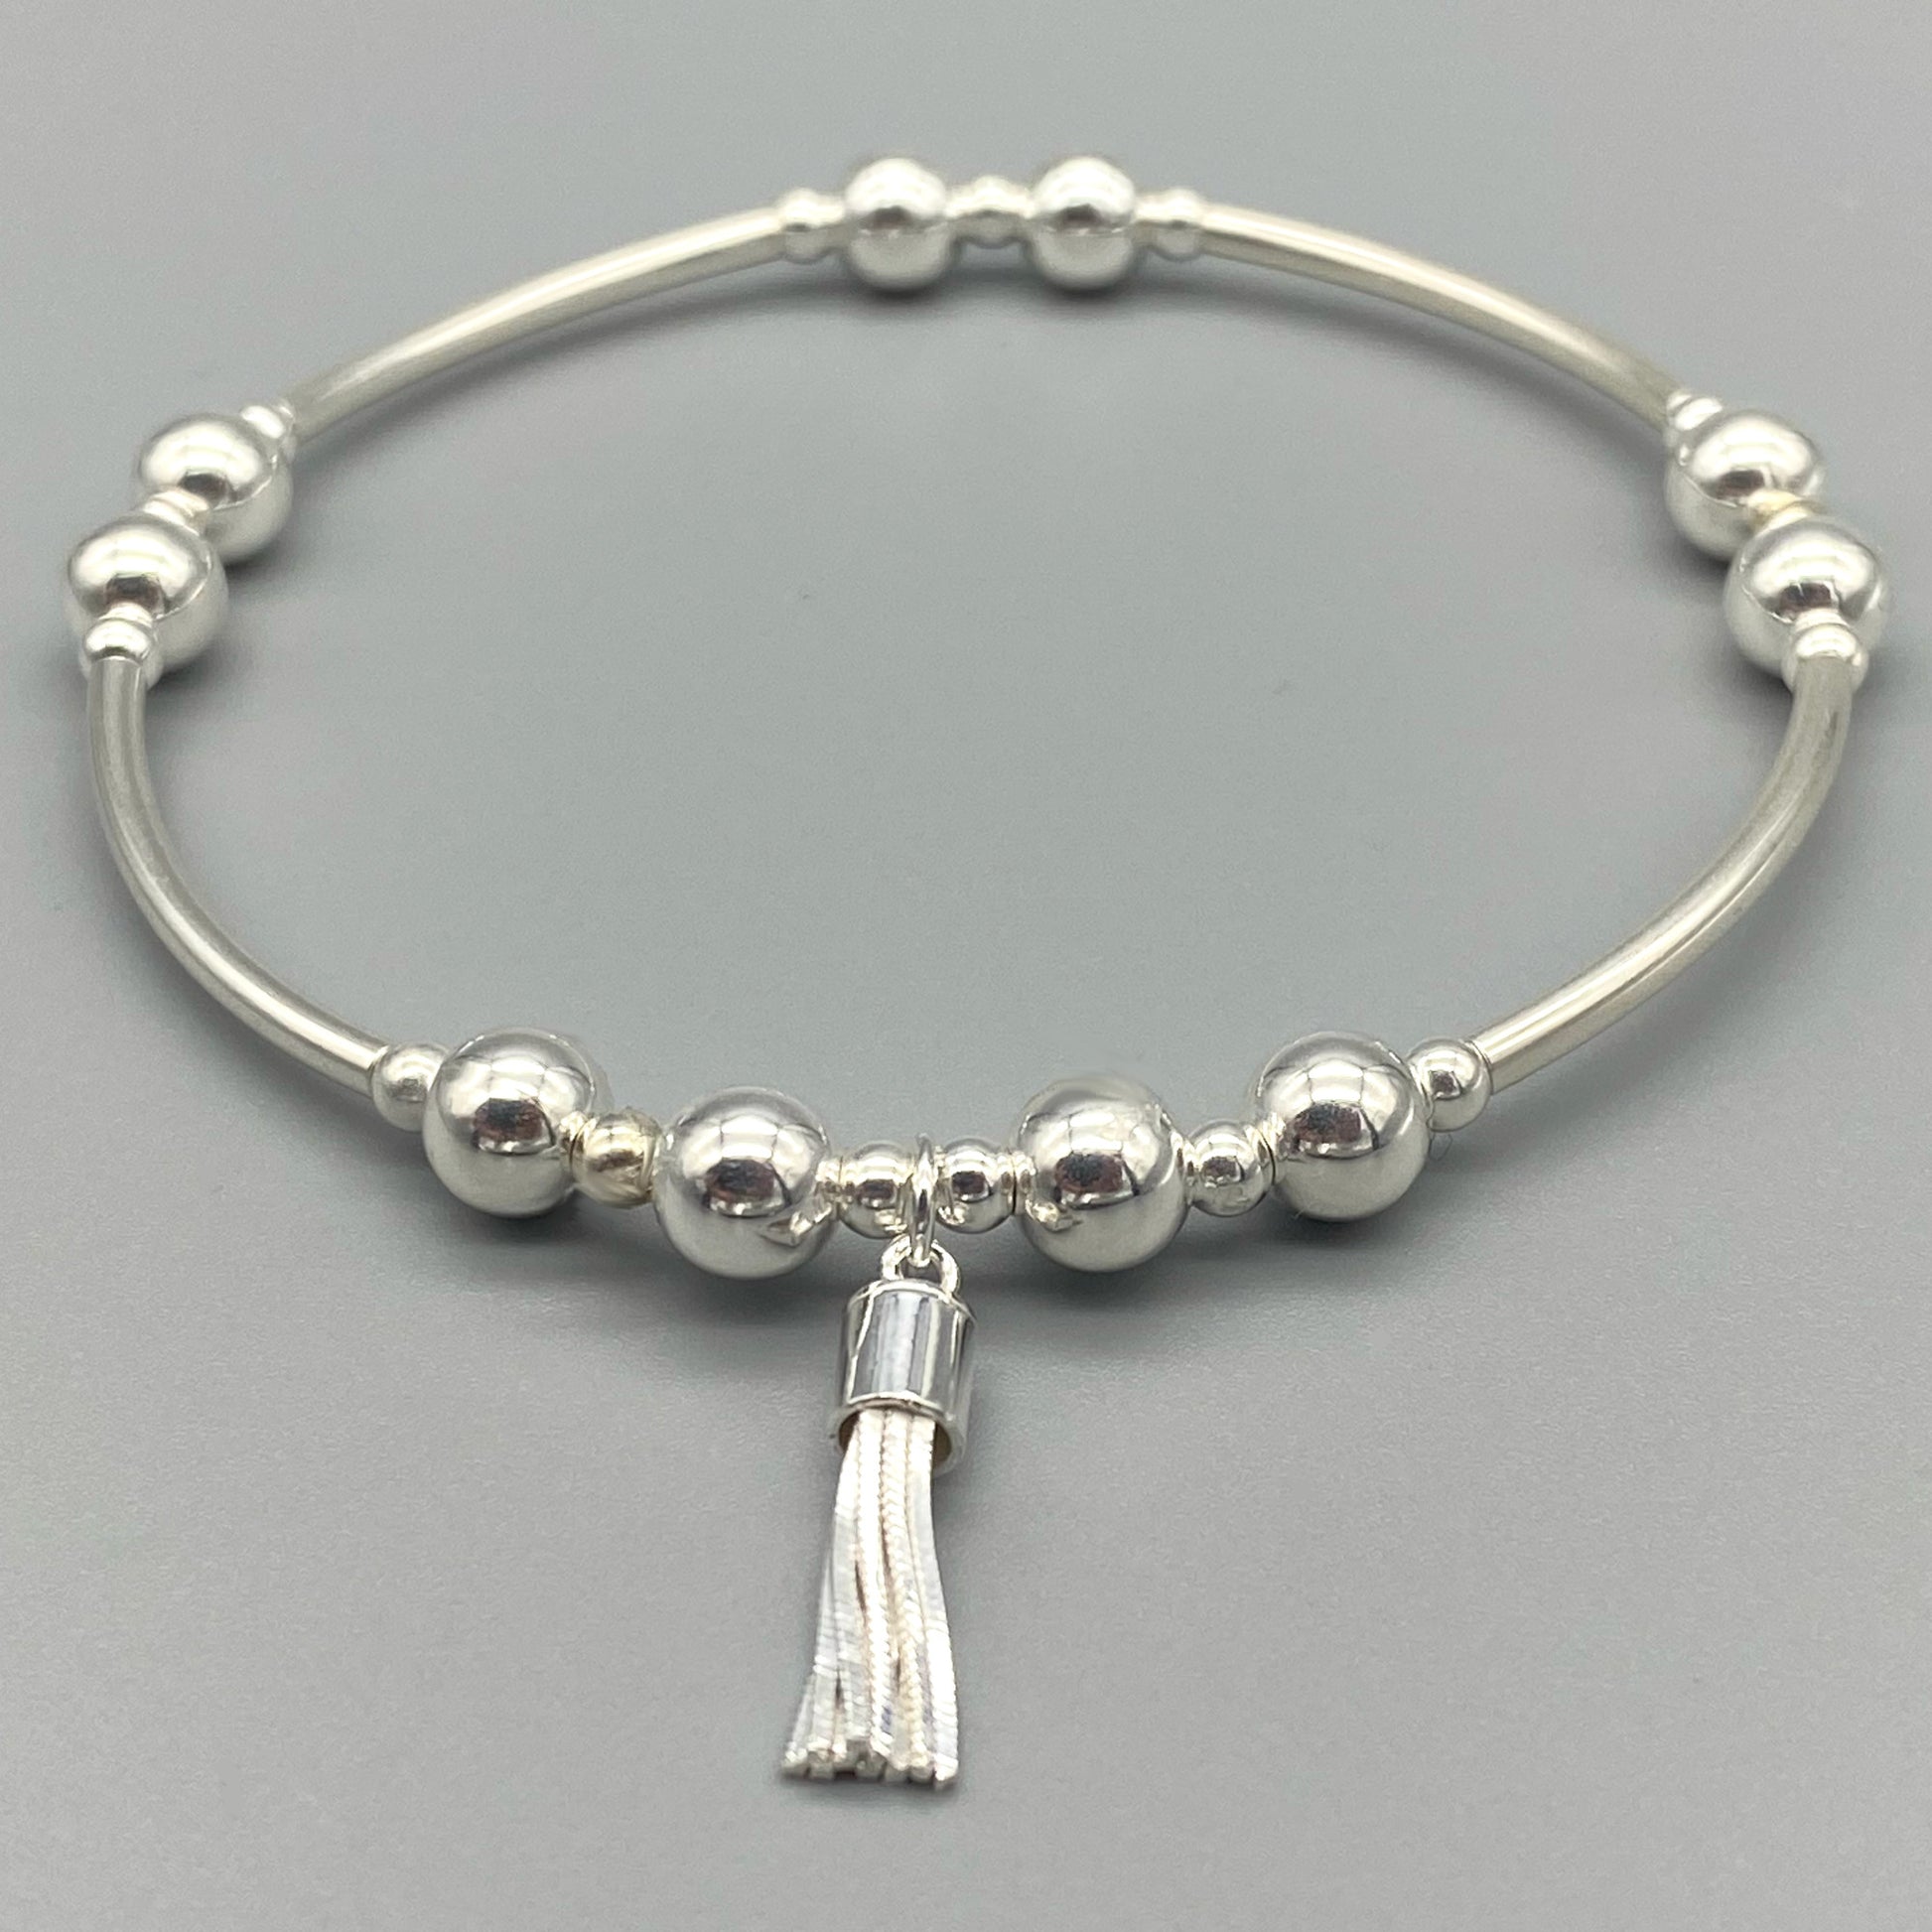 Tassel charm sterling silver stacker bracelet by My Silver Wish